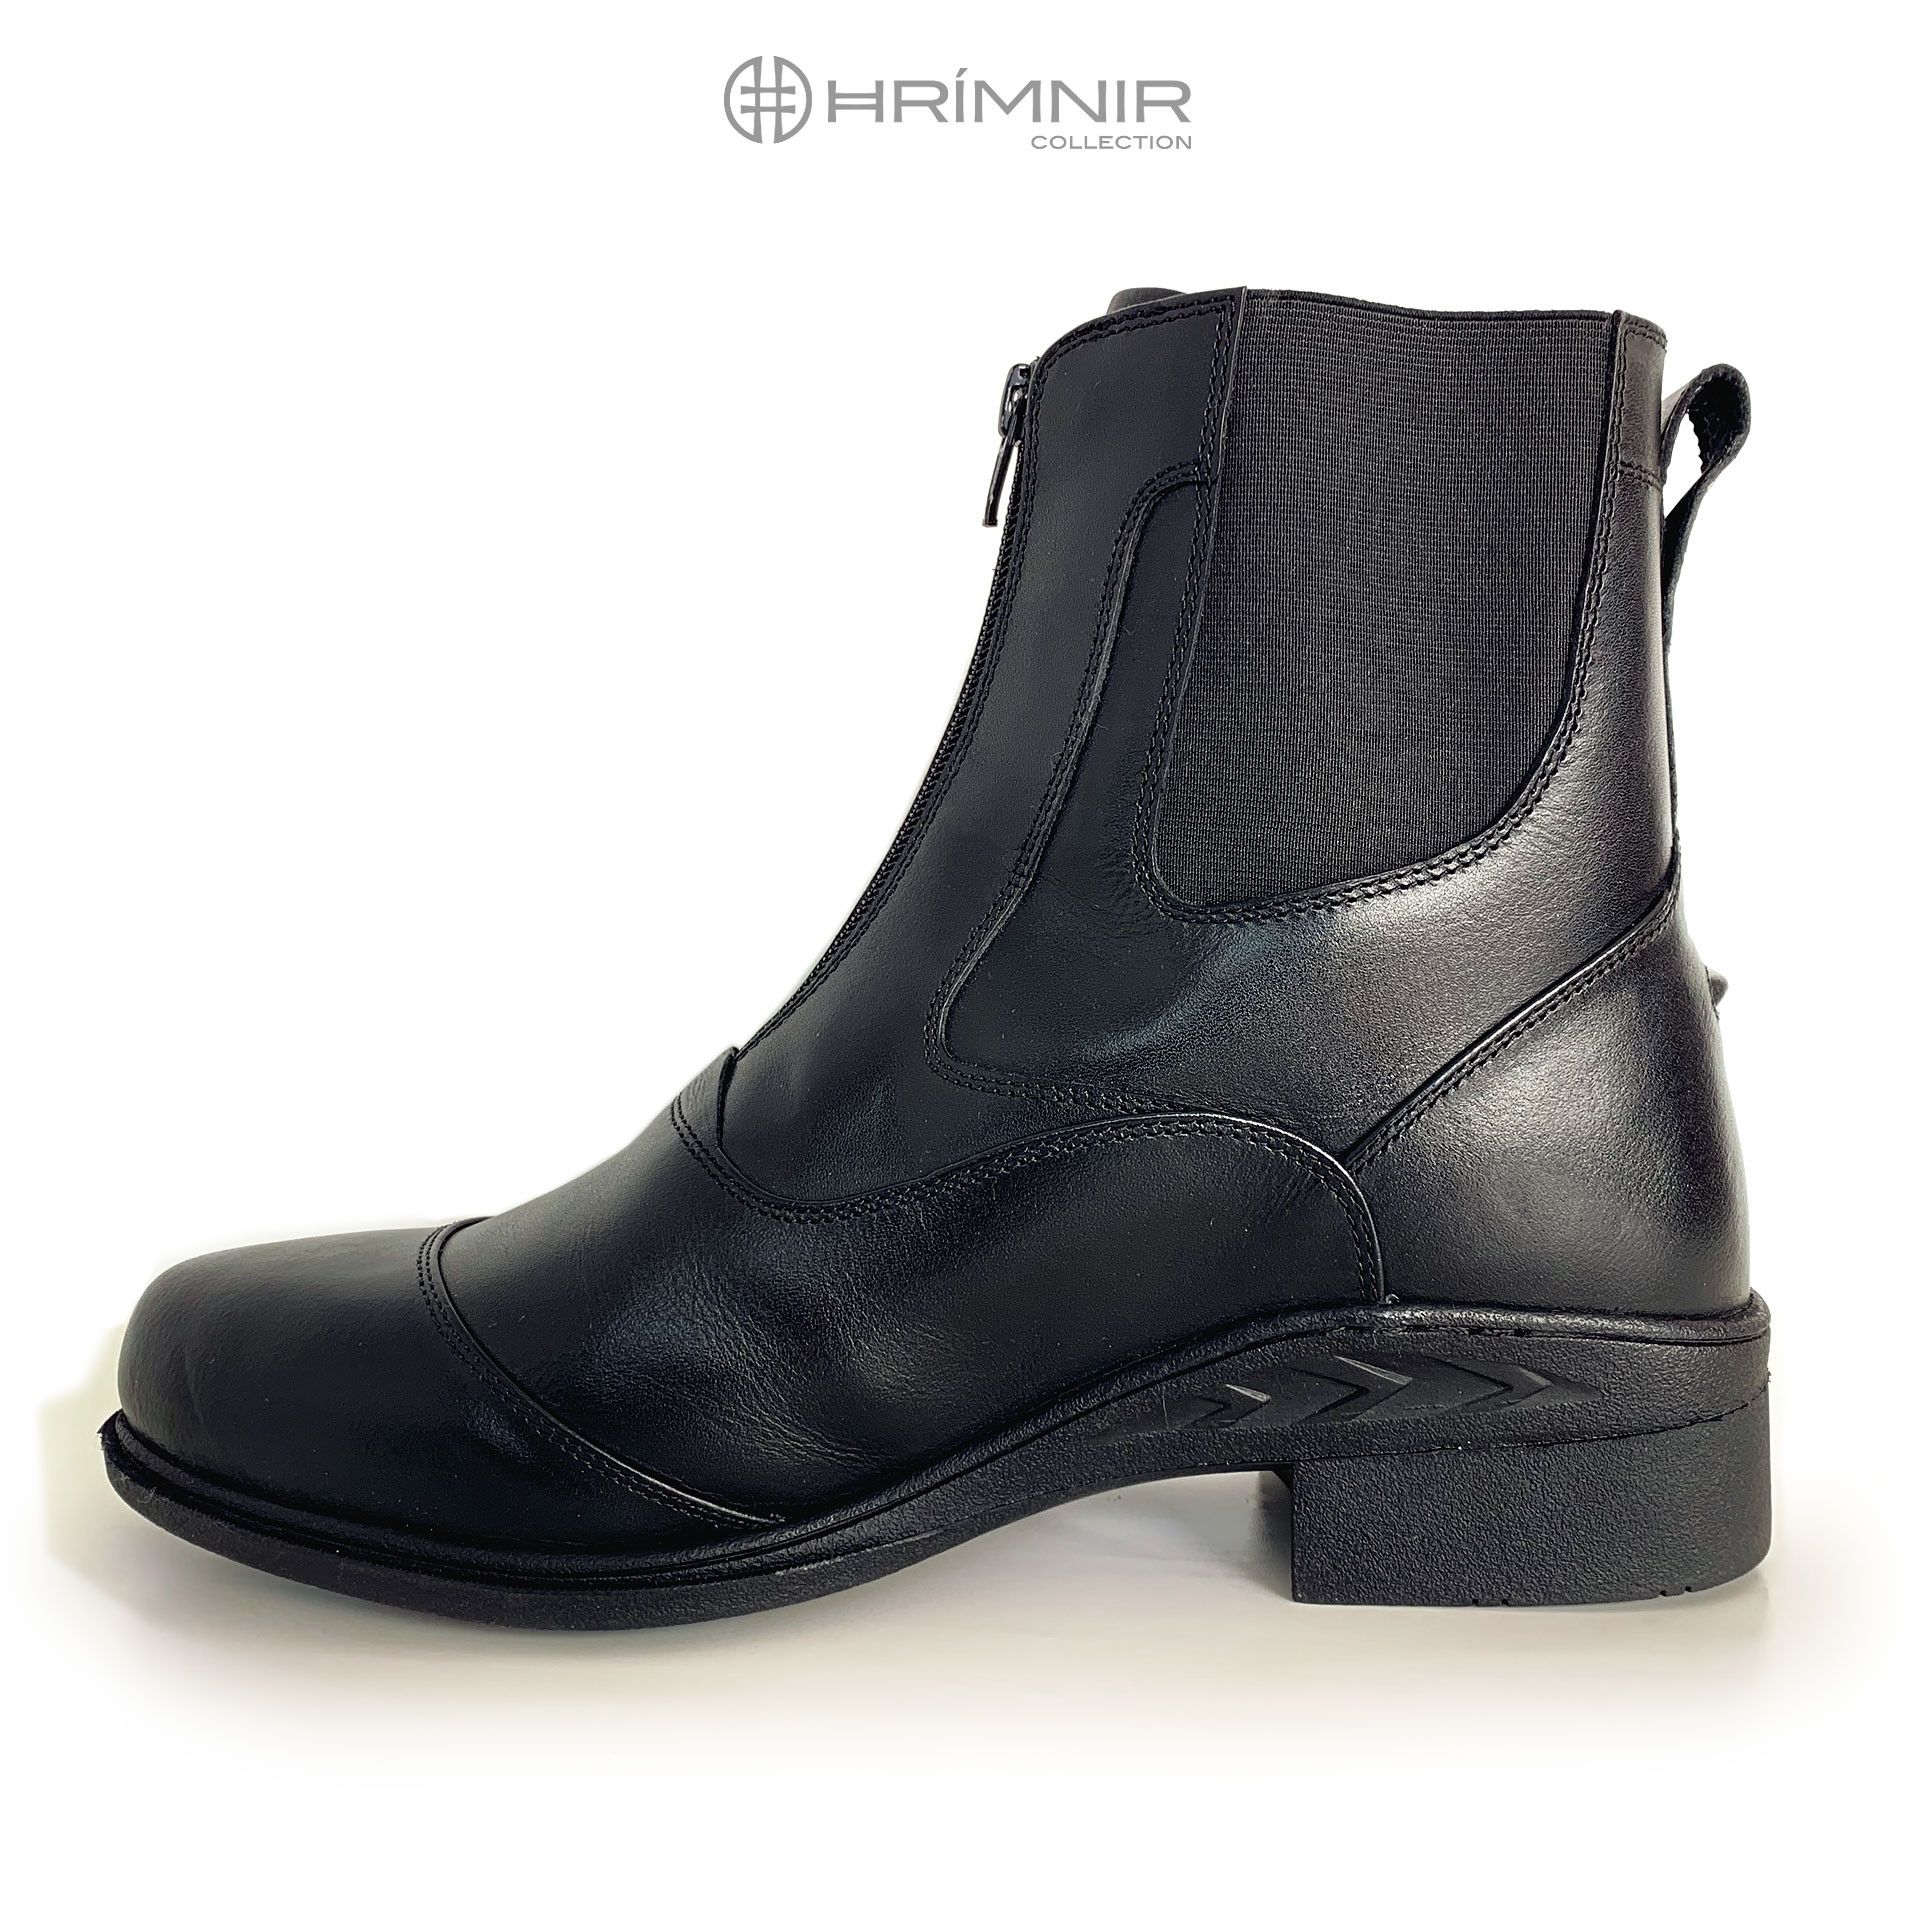 Roux ligevægt Waterfront Hrimnir Jodhpur støvle i top kvalitet - sort læder med lynlås.